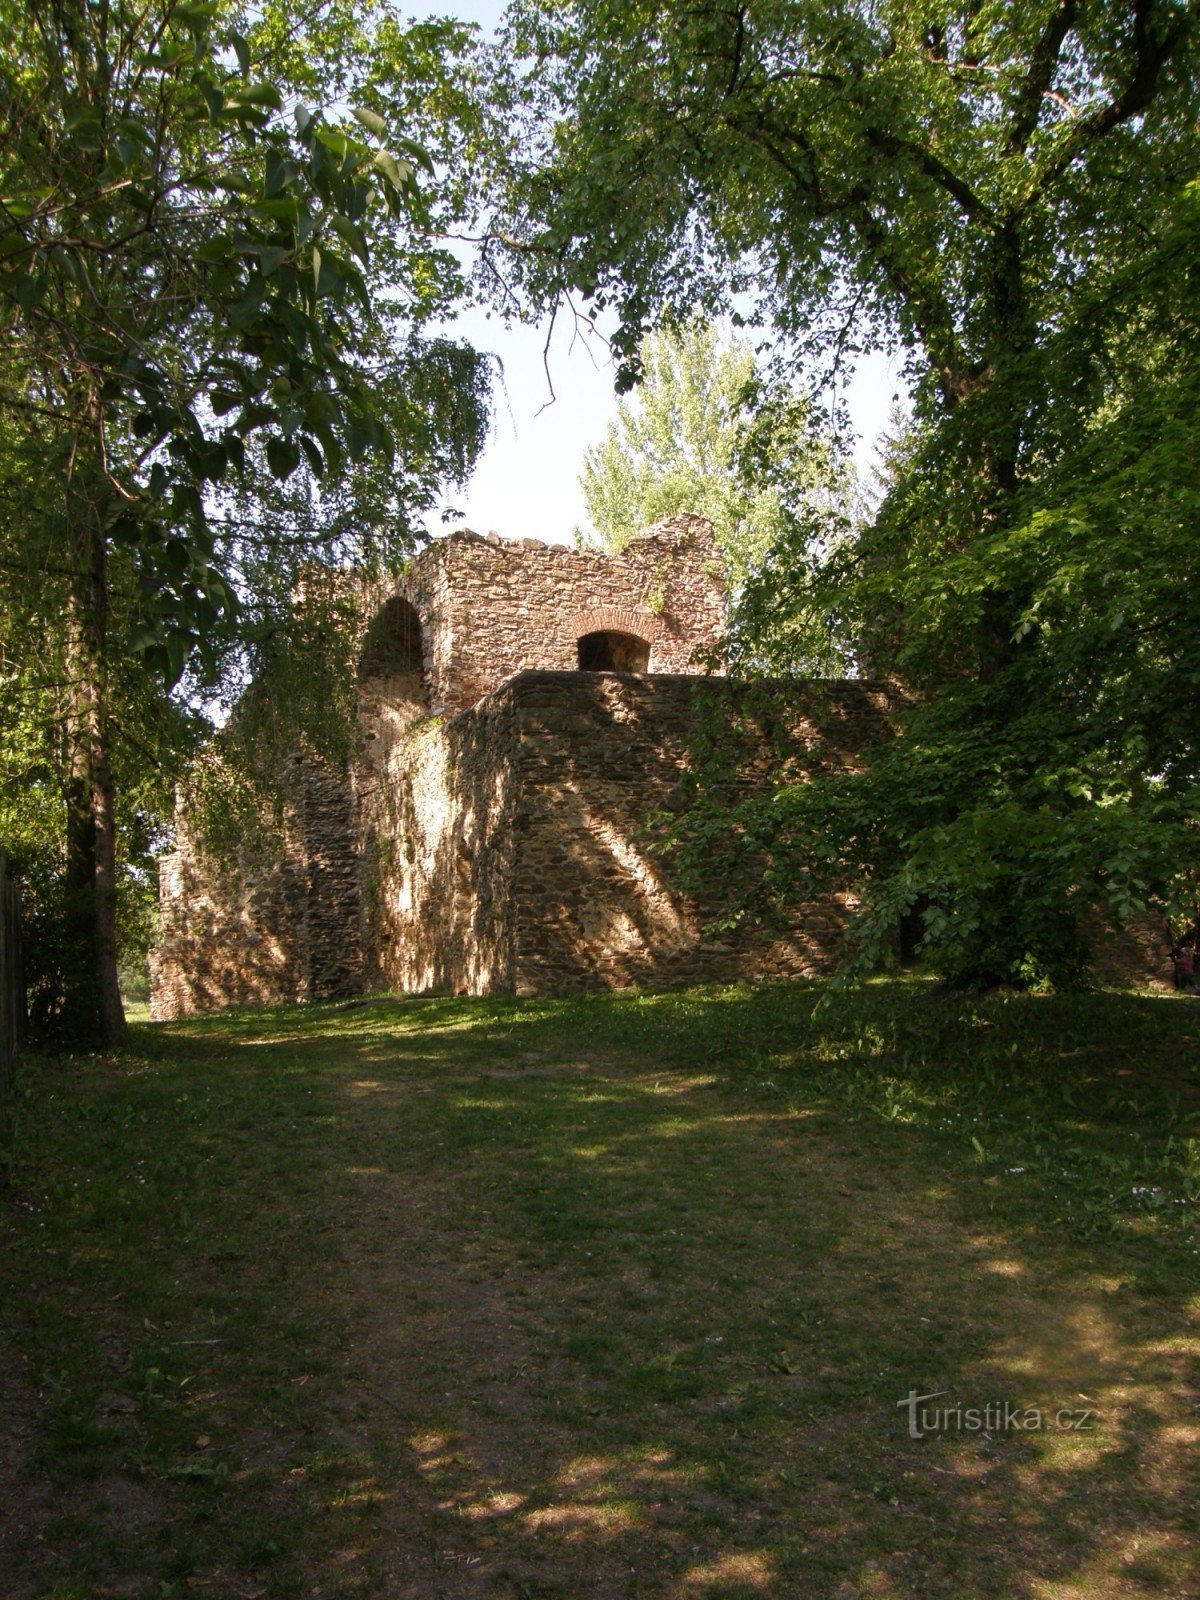 Pháo đài cách trung tâm làng khoảng 70 m.